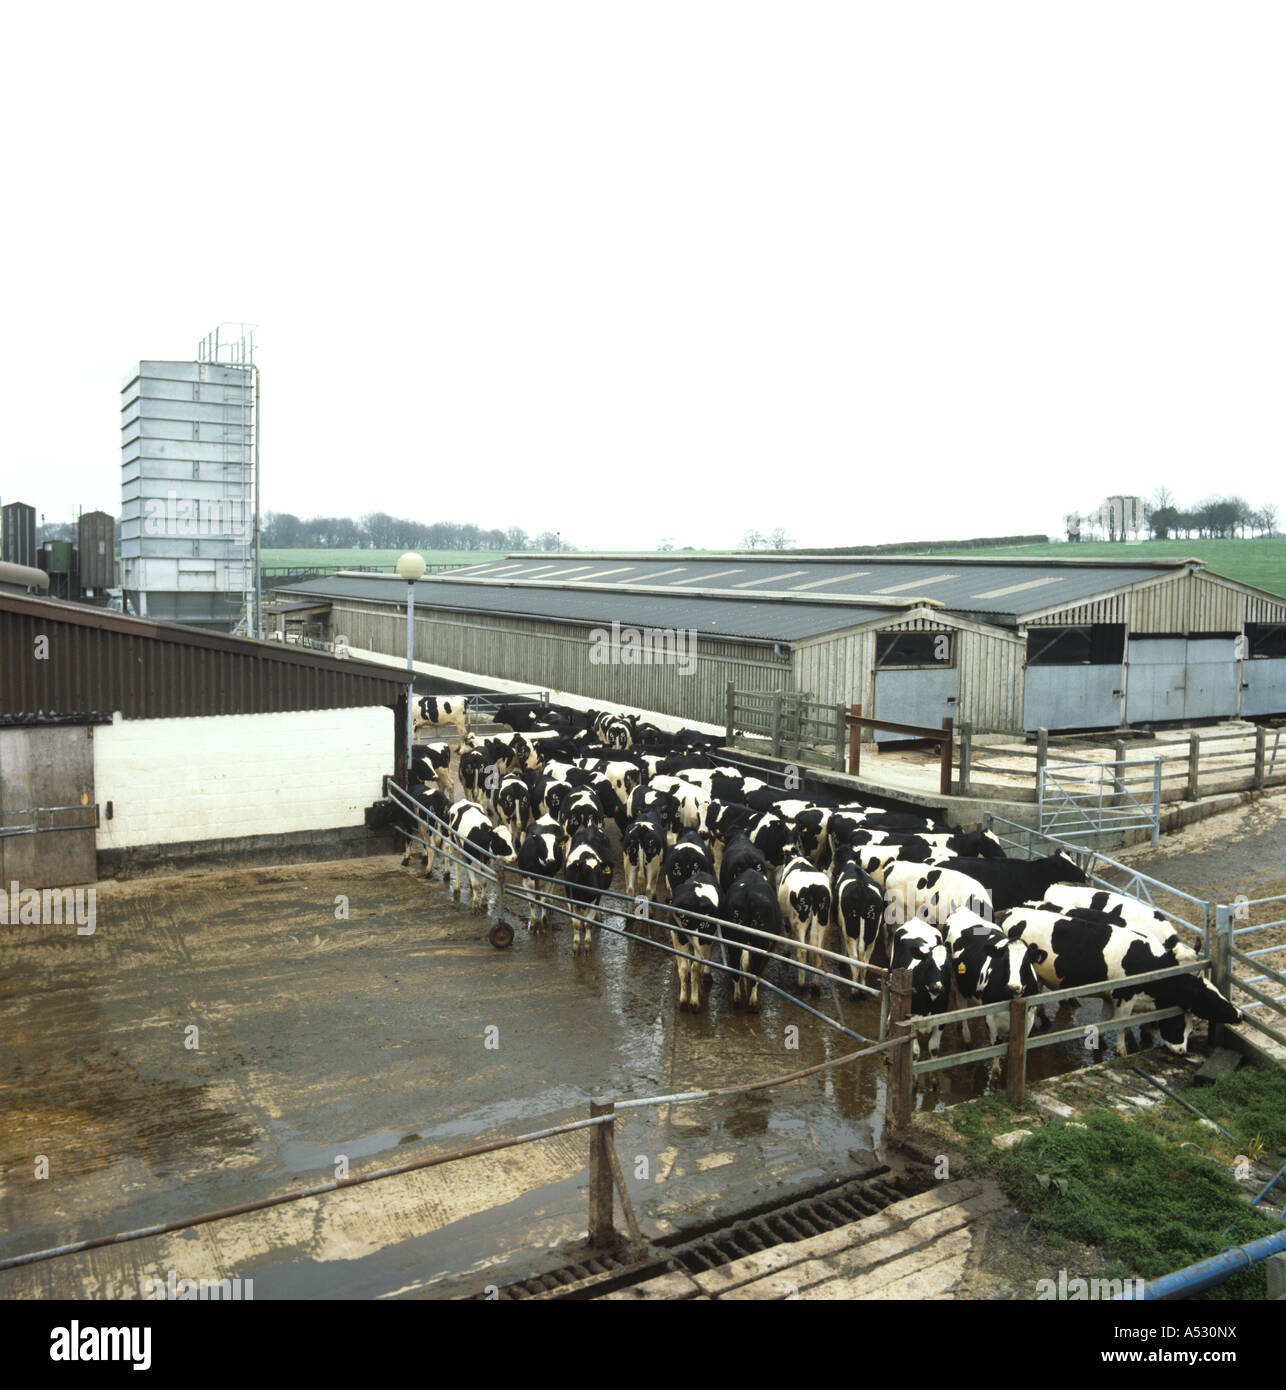 Auf der Suche nach unten in einen Bauernhof Rinder Hof mit Holstein-Friesian Färsen zu sammeln Stockfoto